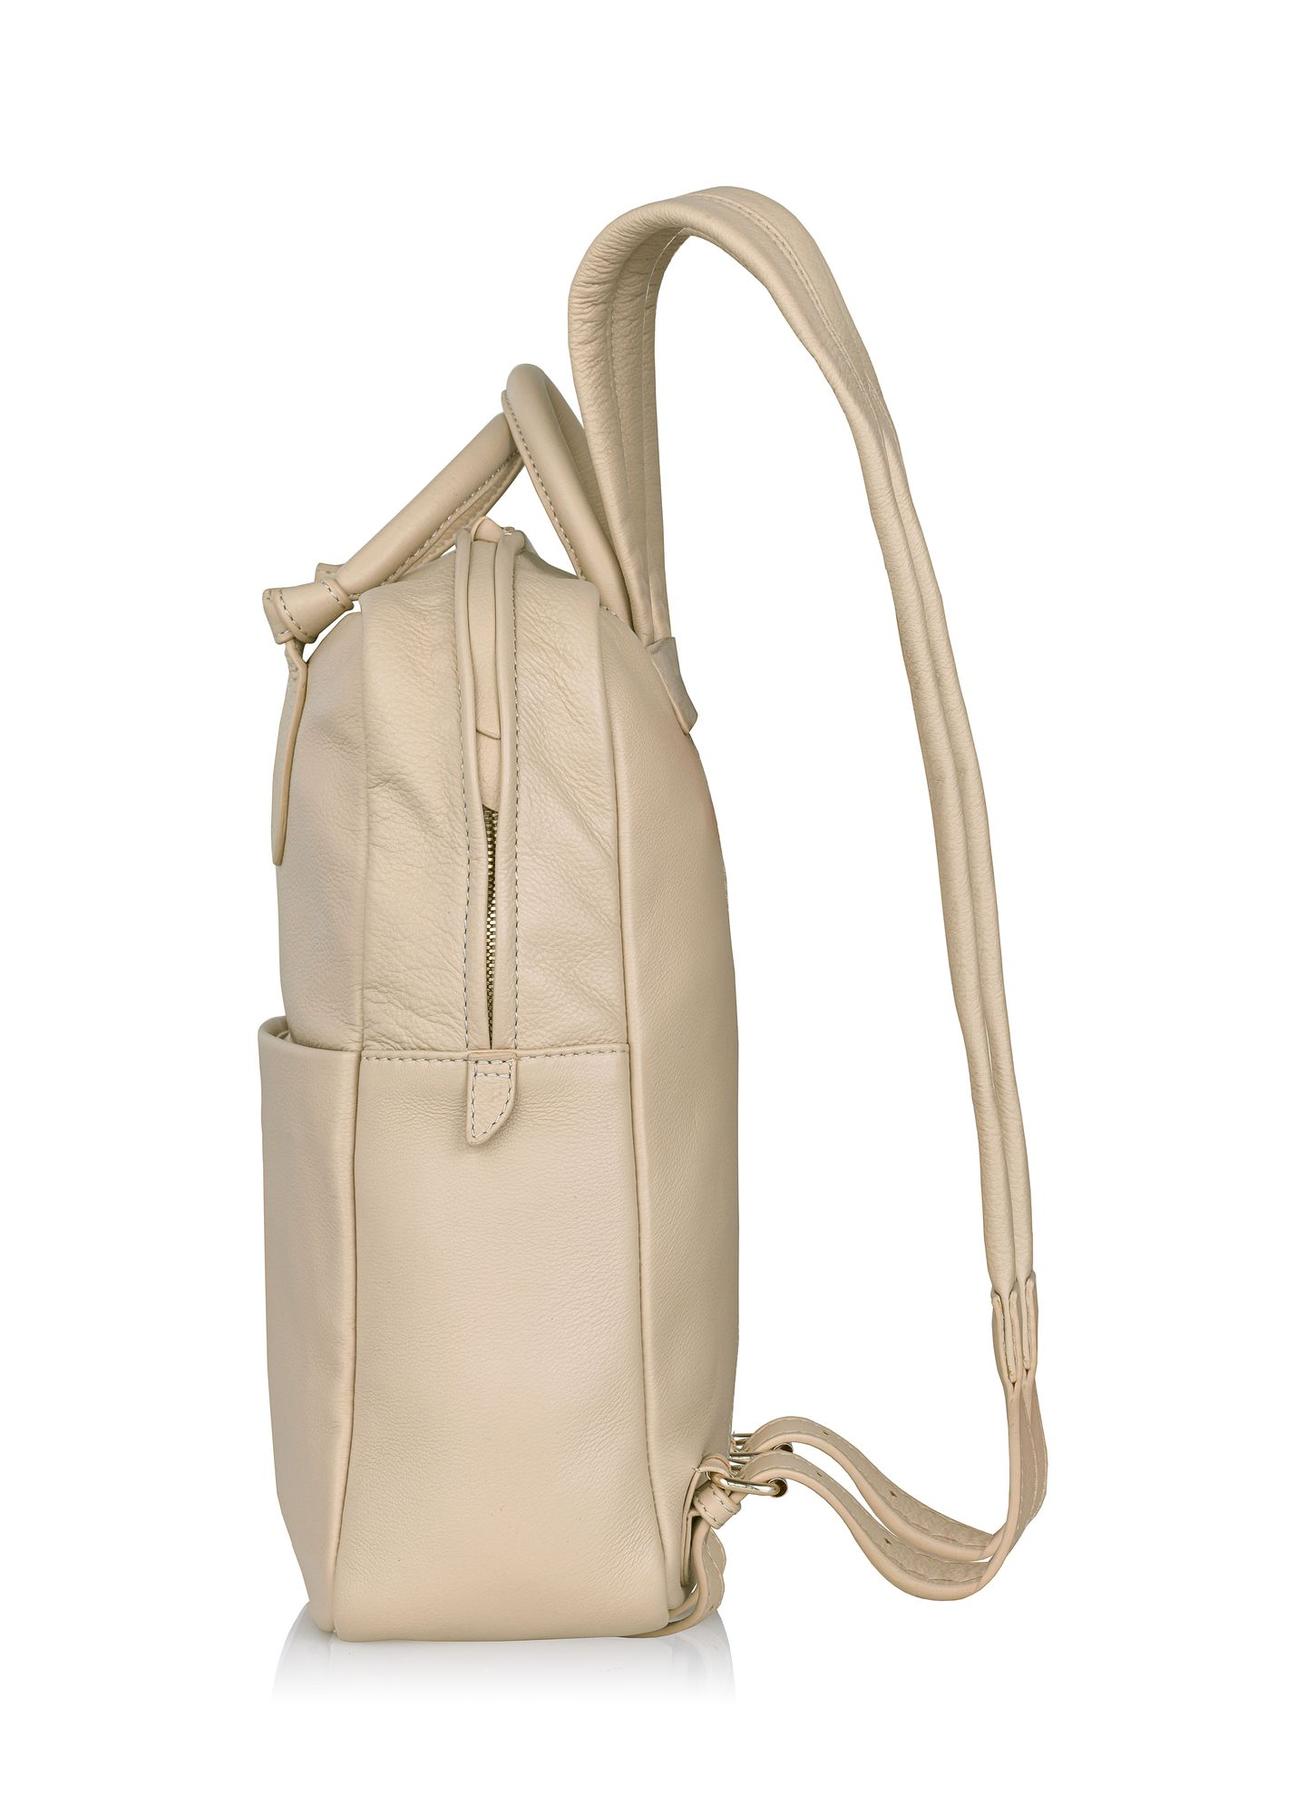 Beżowy skórzany plecak damski TORES-0991-81(W24)